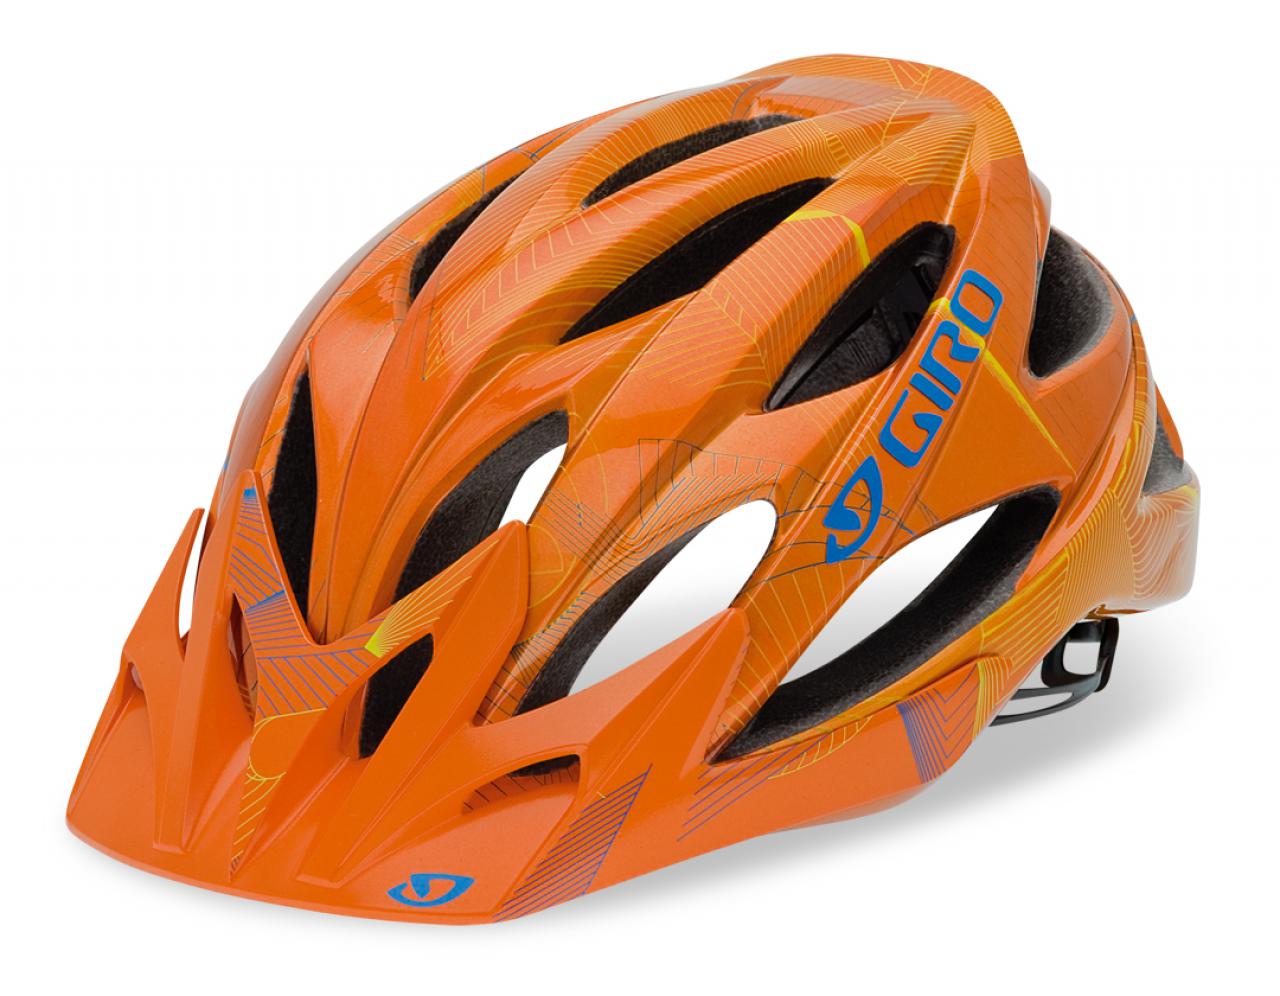 Bekentenis elkaar Prestatie Updated with video: Giro launch new Xar helmet for 2011 | road.cc